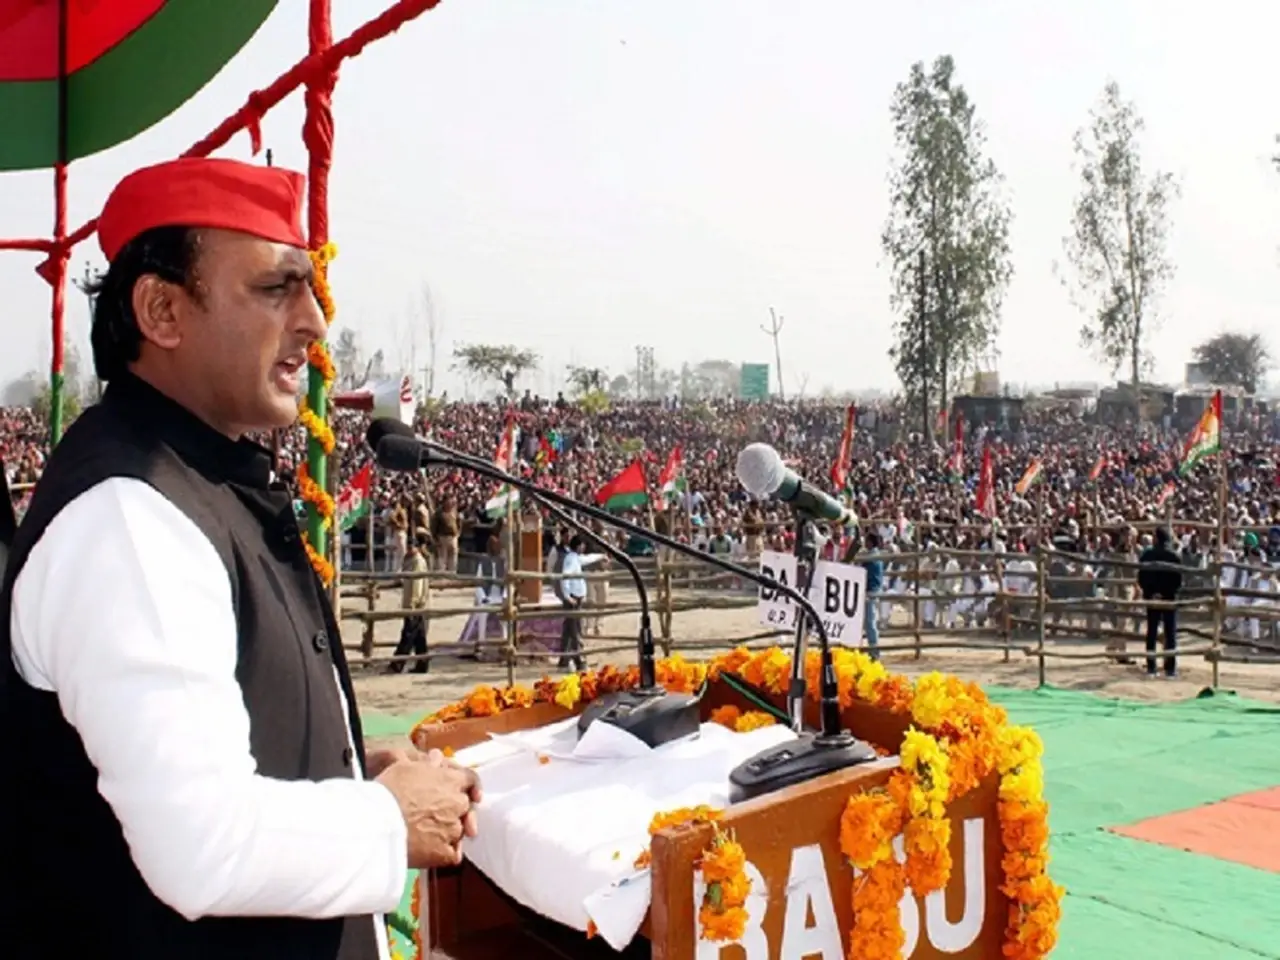 Akhilesh Yadav, national president of the Samajwadi Party